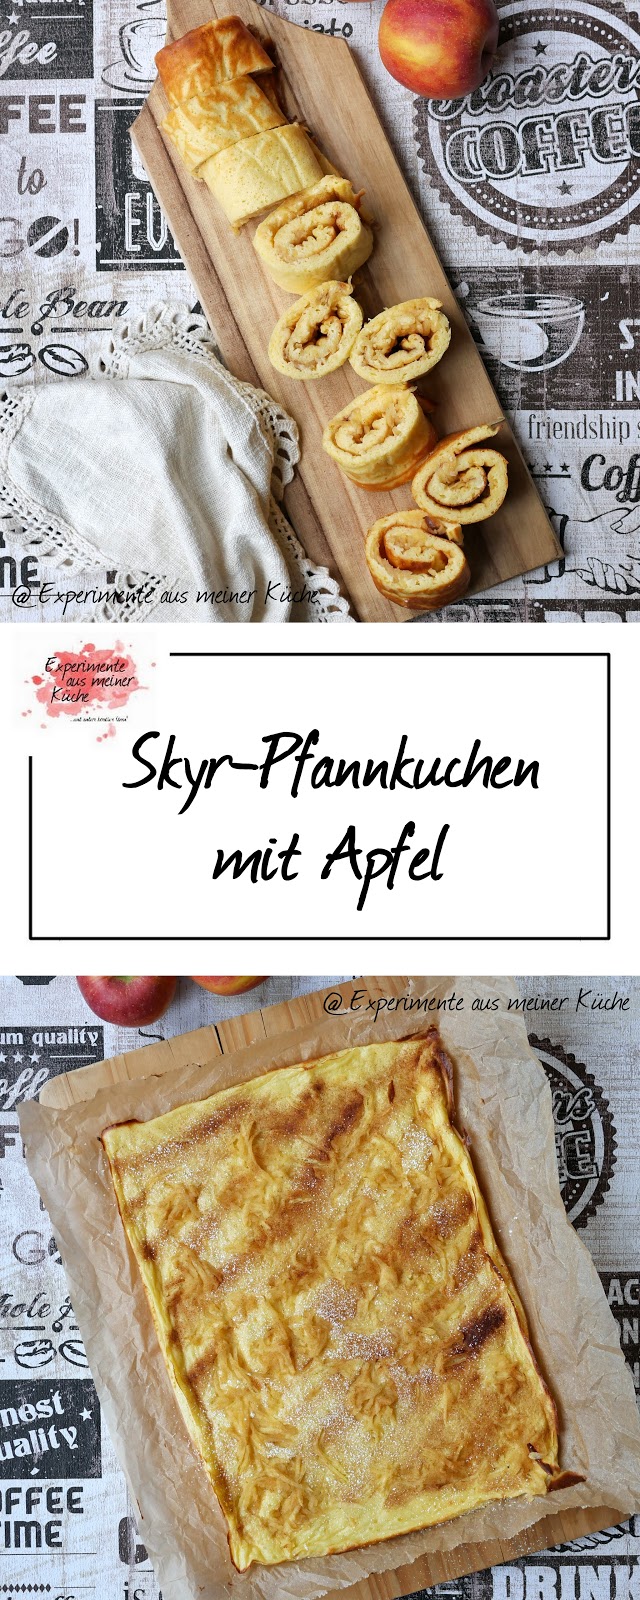 Experimente aus meiner Küche: Skyr-Pfannkuchen mit Apfel